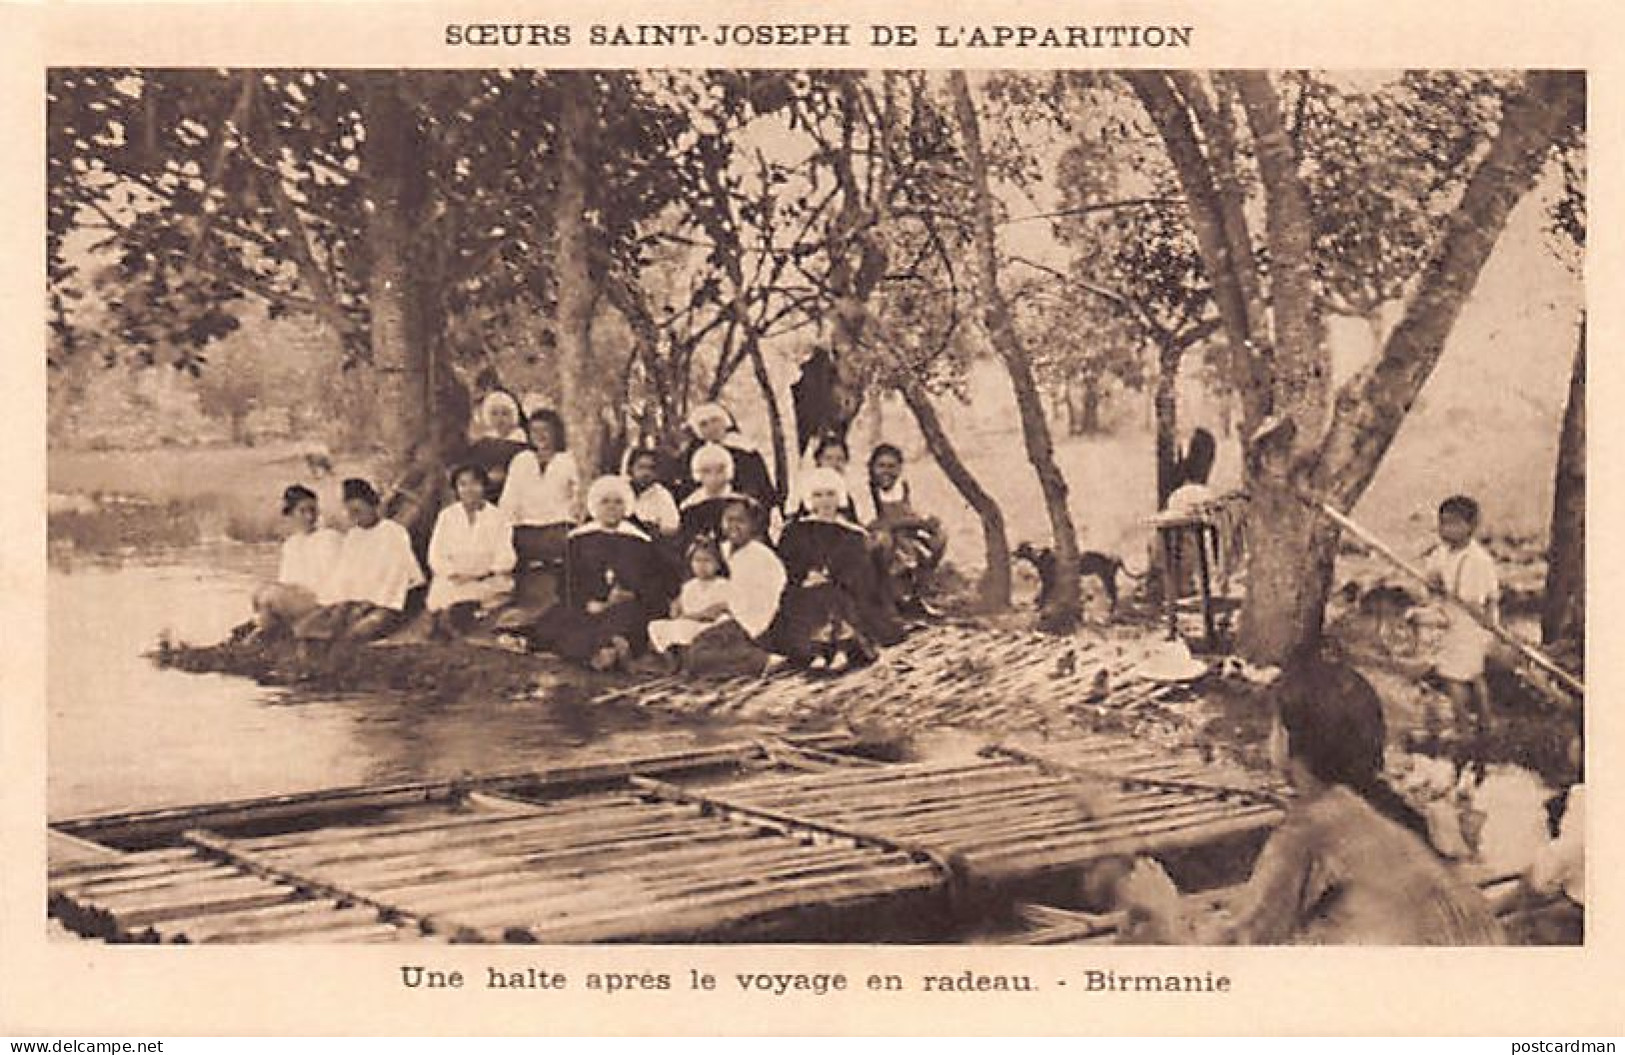 BURMA - A Stopover After The Raft Trip - Publ. Soeurs Saint-Joseph De L'Apparition - Myanmar (Burma)